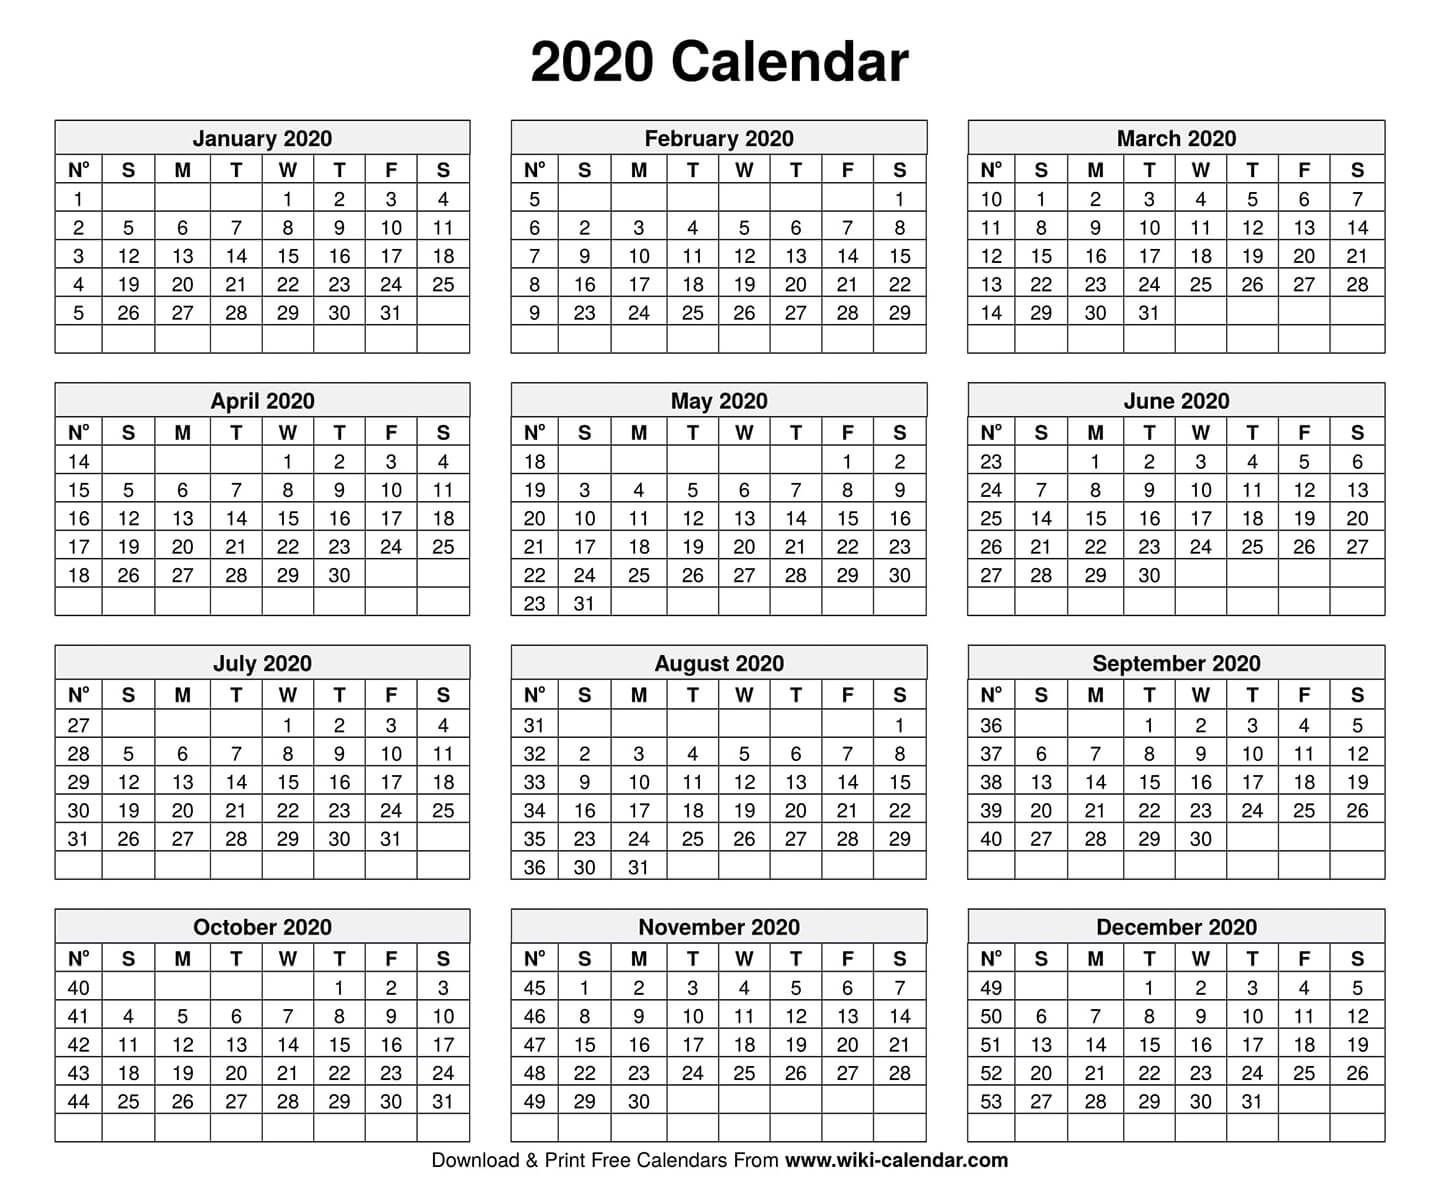 20 Calendar 2021 Hk Free Download Printable Calendar